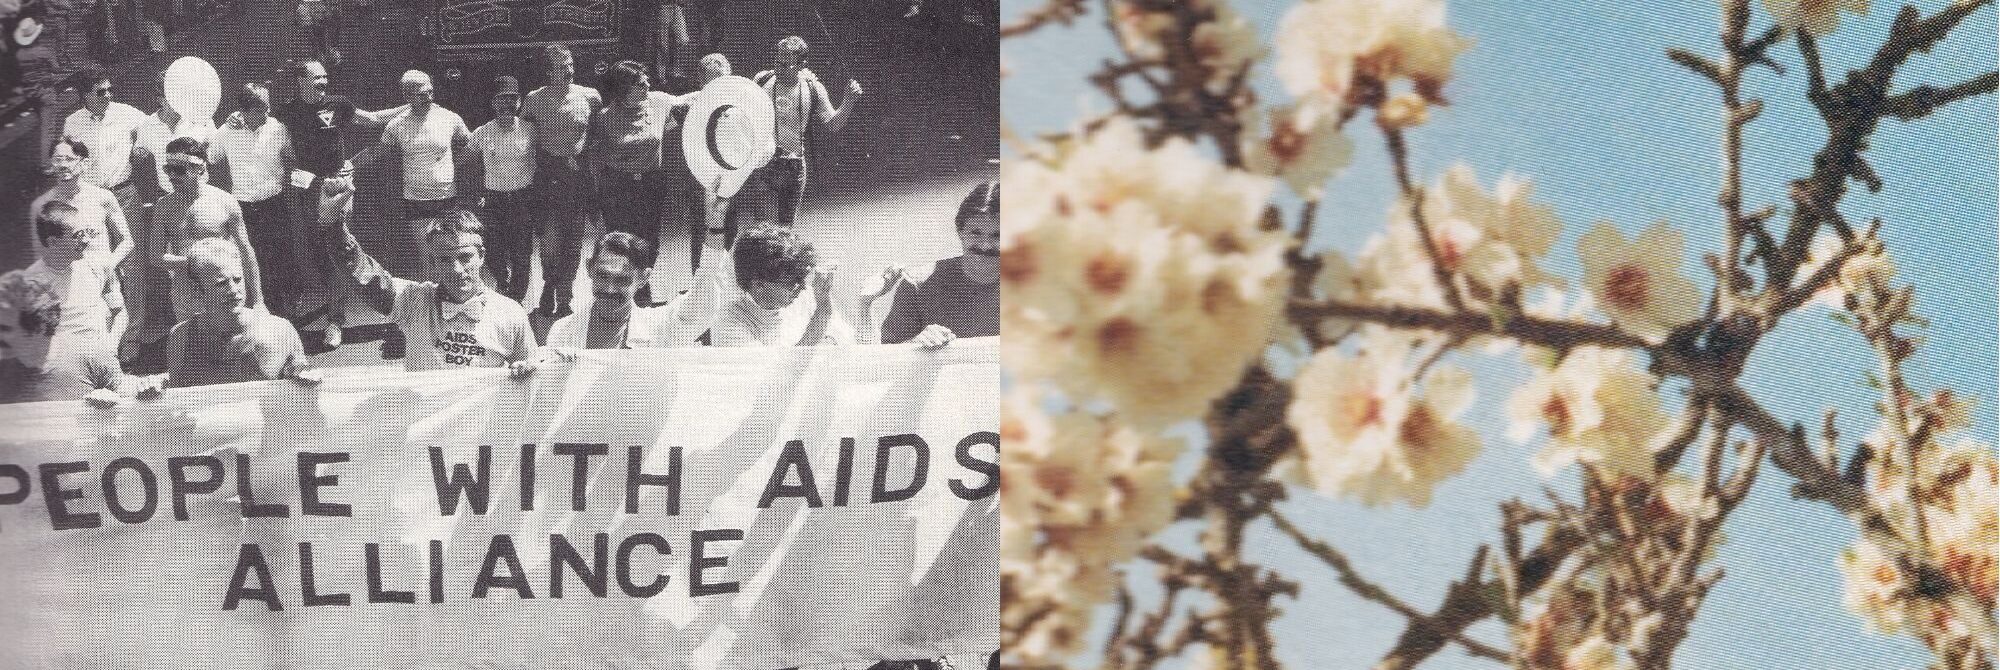 Sort/hvis billede af demonstranter med banner hvorpå der står "PEOPLE WITH AIDS ALLIANCE" + SMYK billede af et blomstret træ